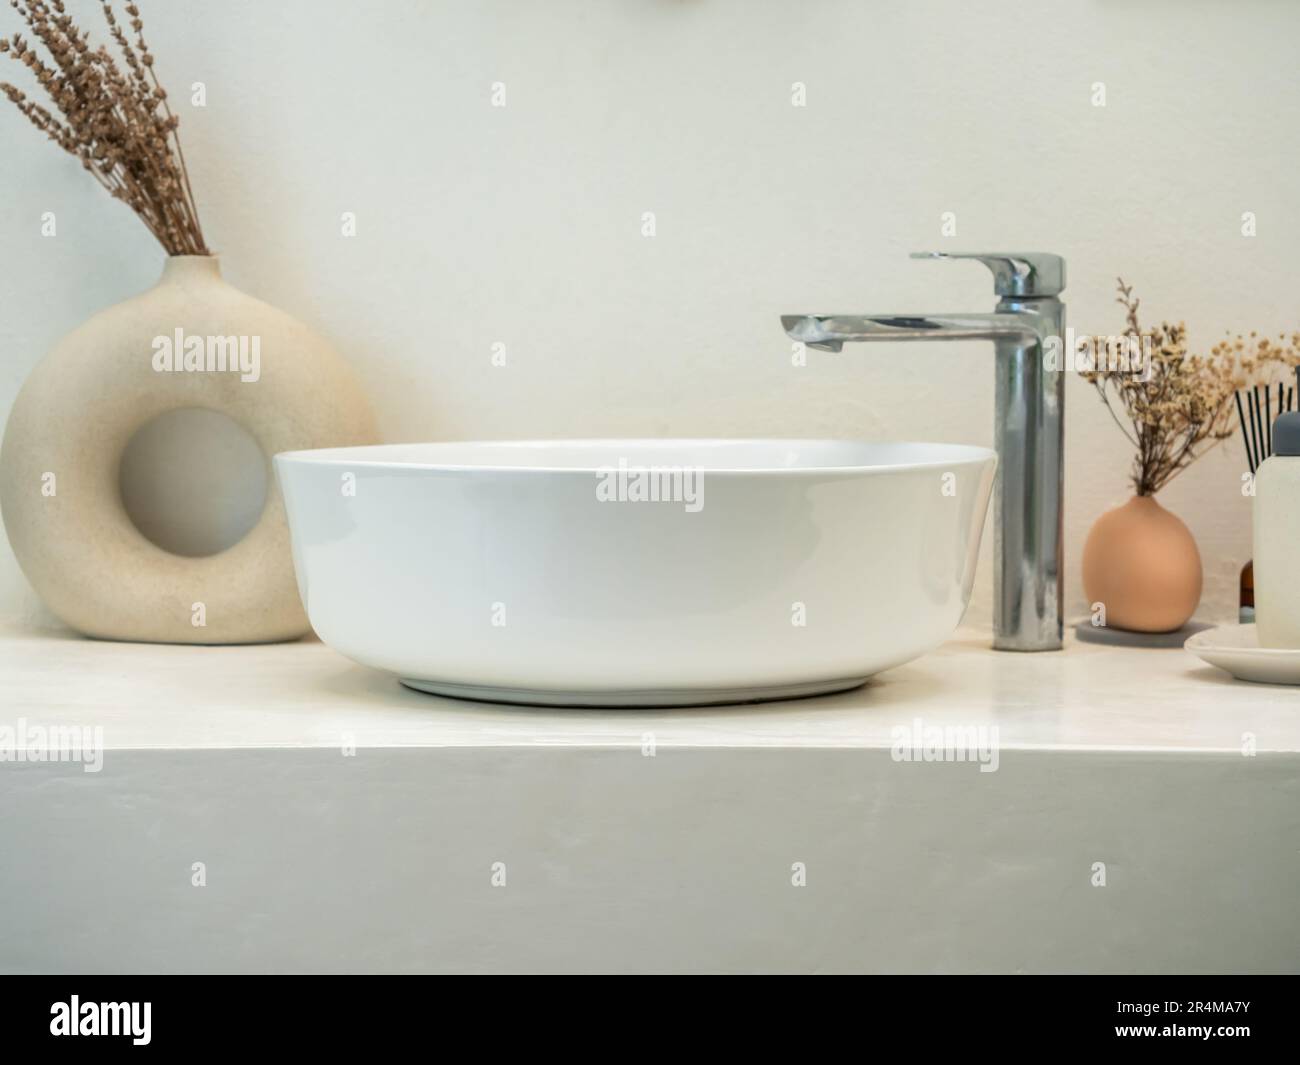 Salle d'eau ou salle de bains propre de style minimaliste avec lavabo rond  moderne, robinet, feuilles vertes dans des pots de design moderne sur  étagère en marbre et merde Photo Stock -